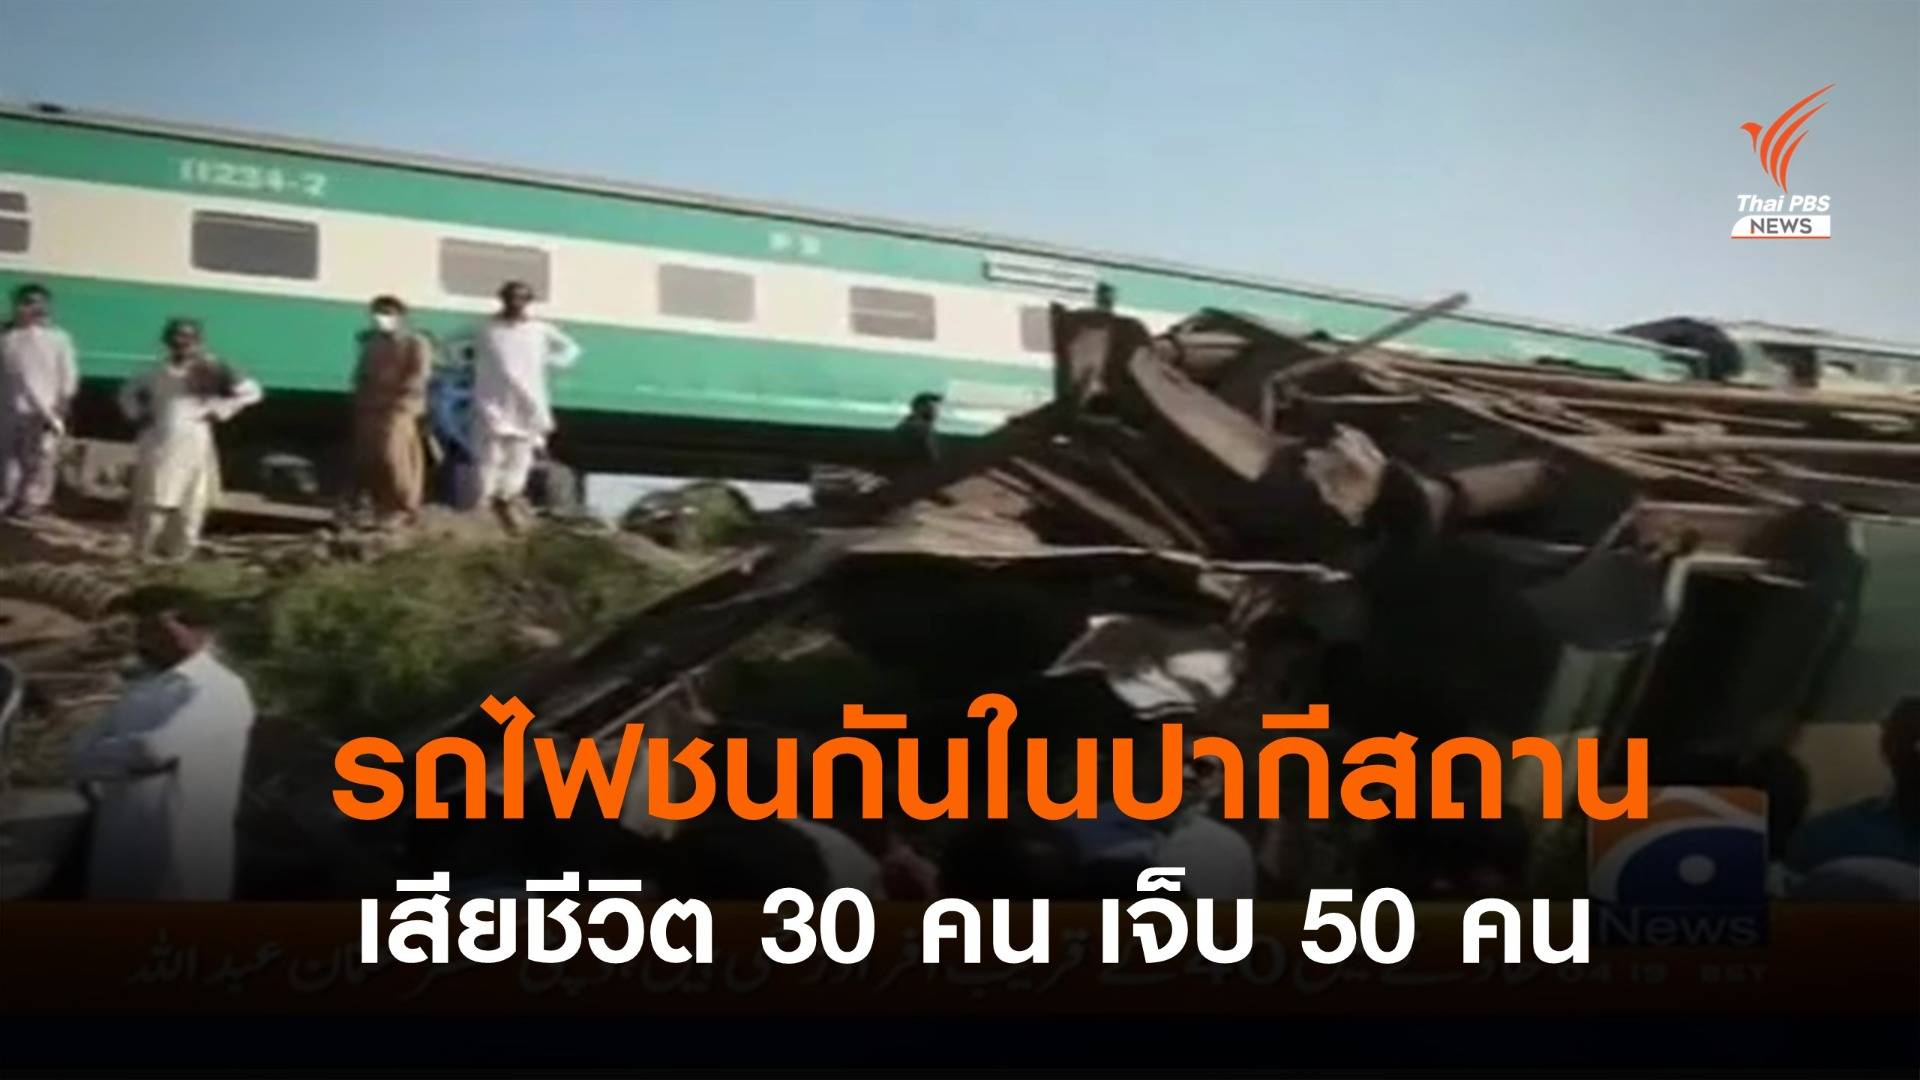 รถไฟชนกันในปากีสถาน เสียชีวิตอย่างน้อย 30 คน